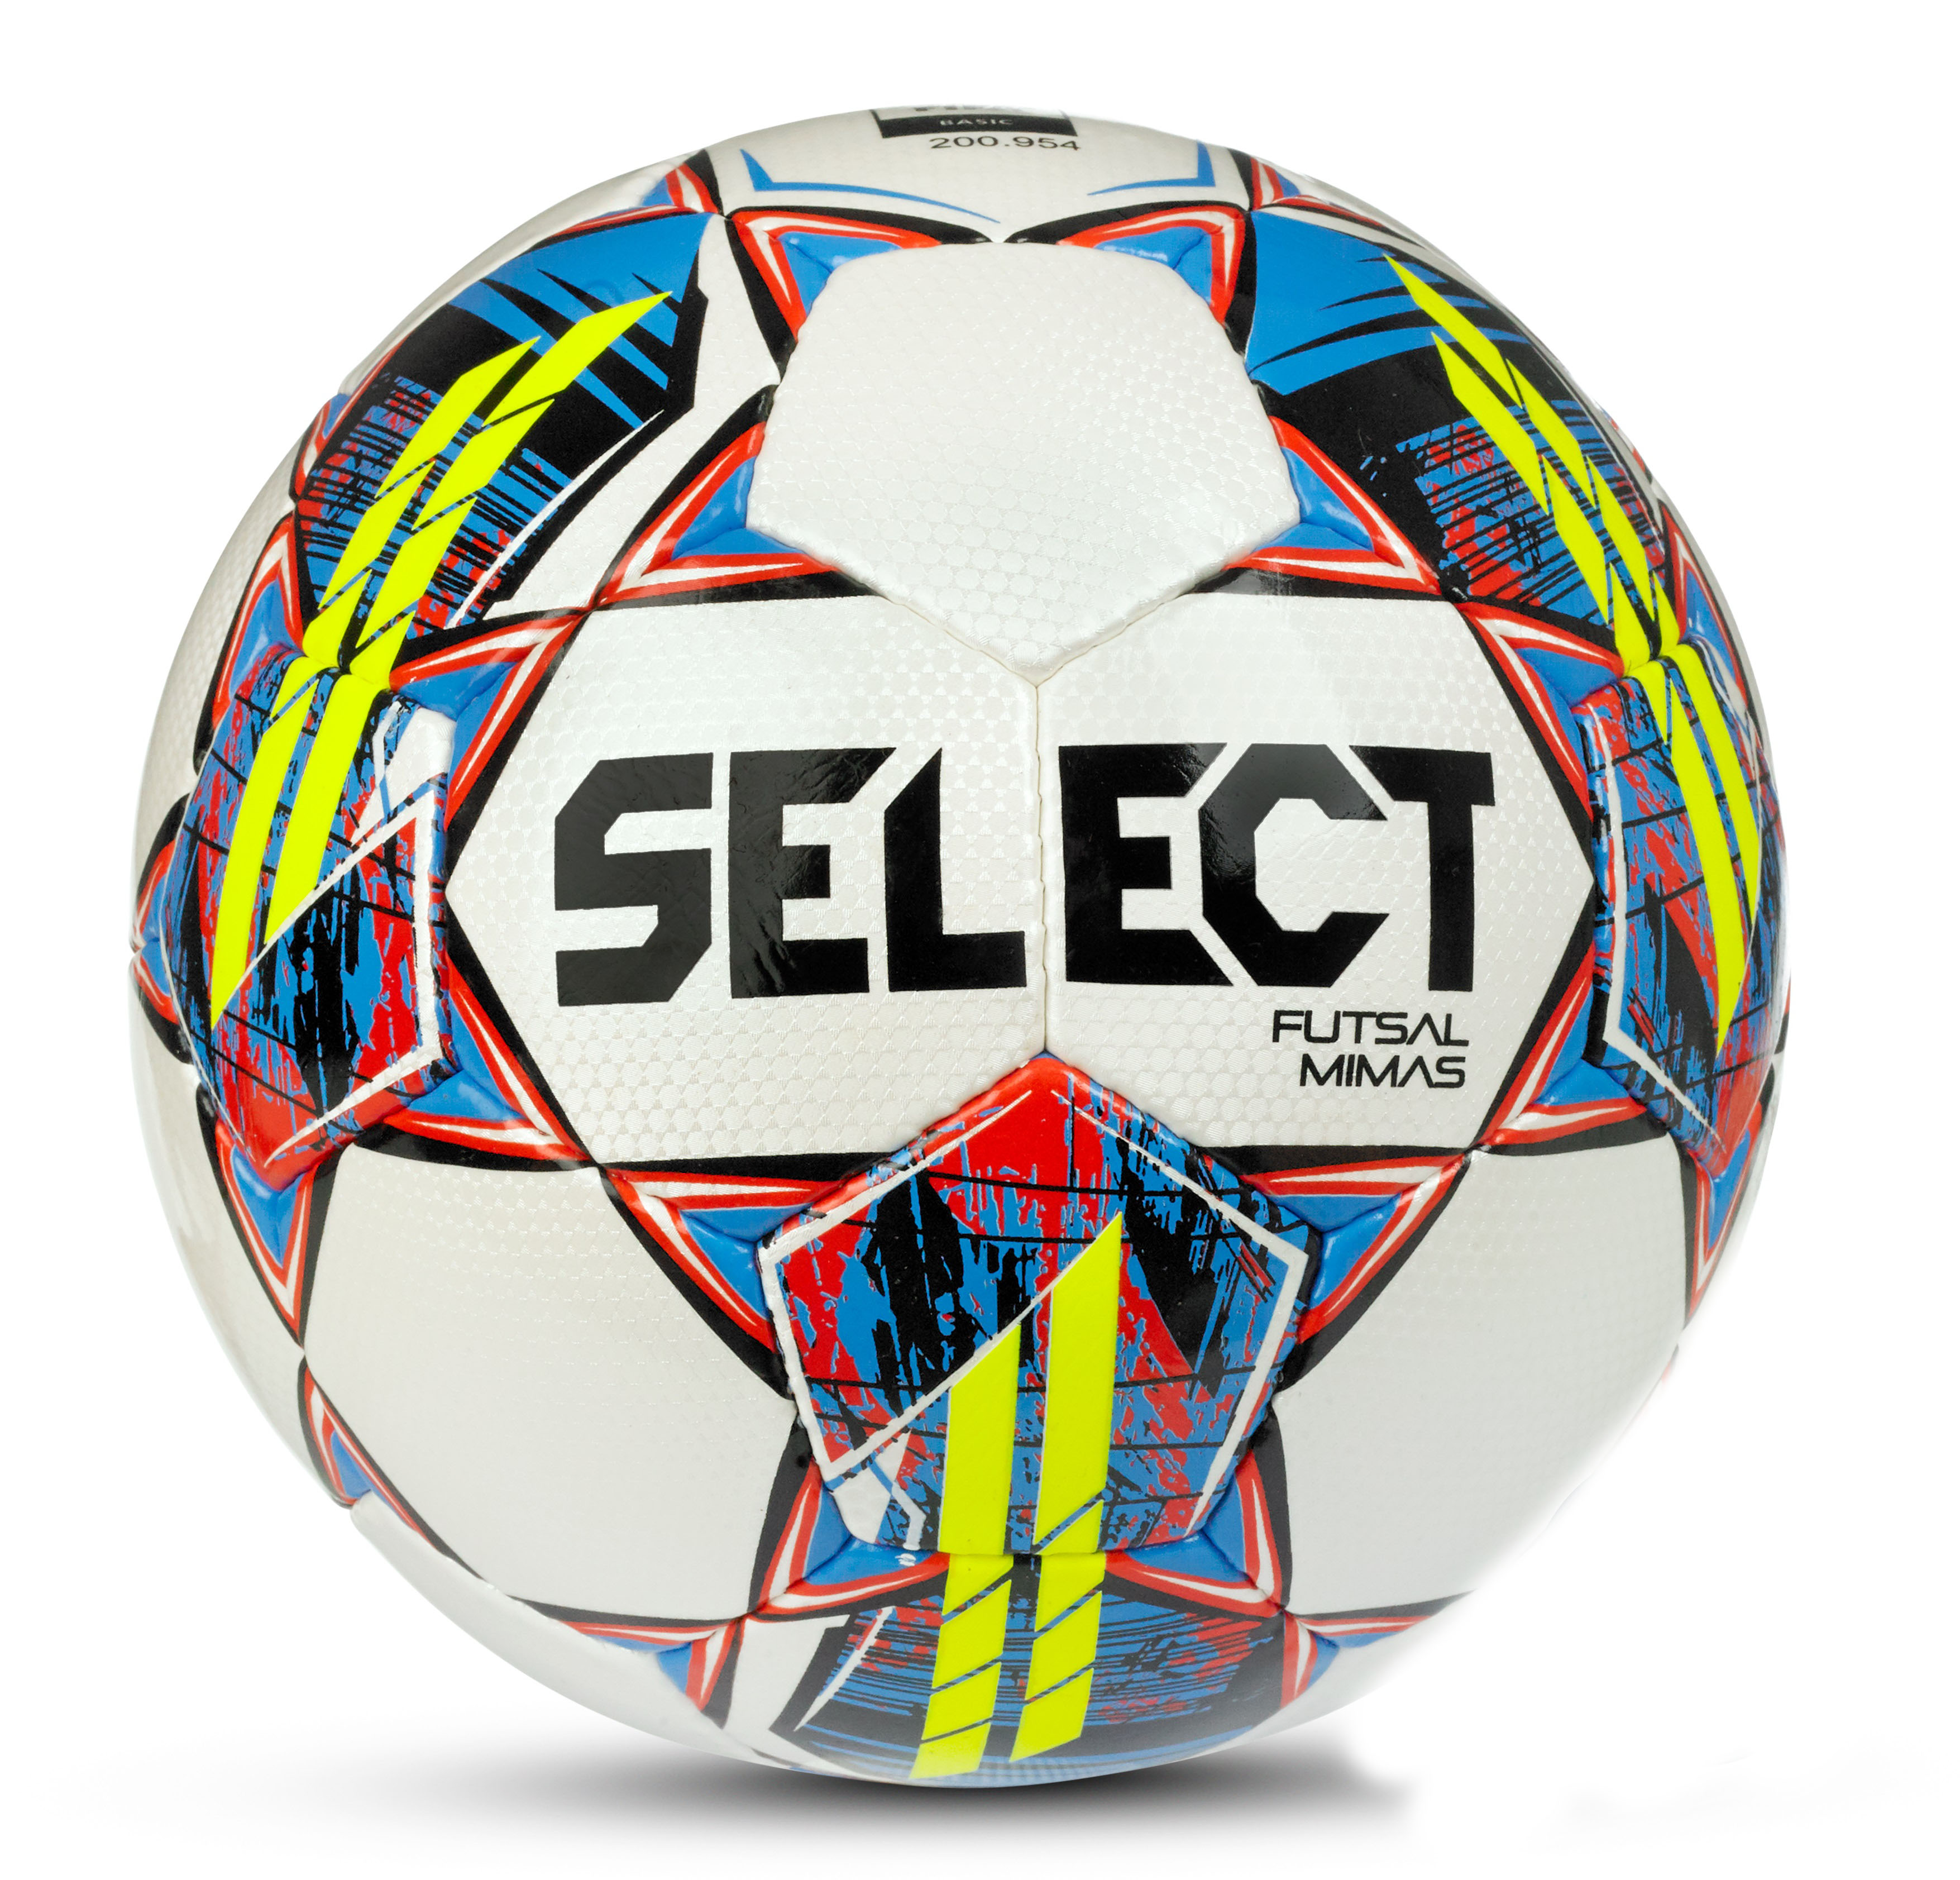 Select Futsal Футзальный мяч Select Futsal Mimas v22 FIFA Basic, бело-желтый